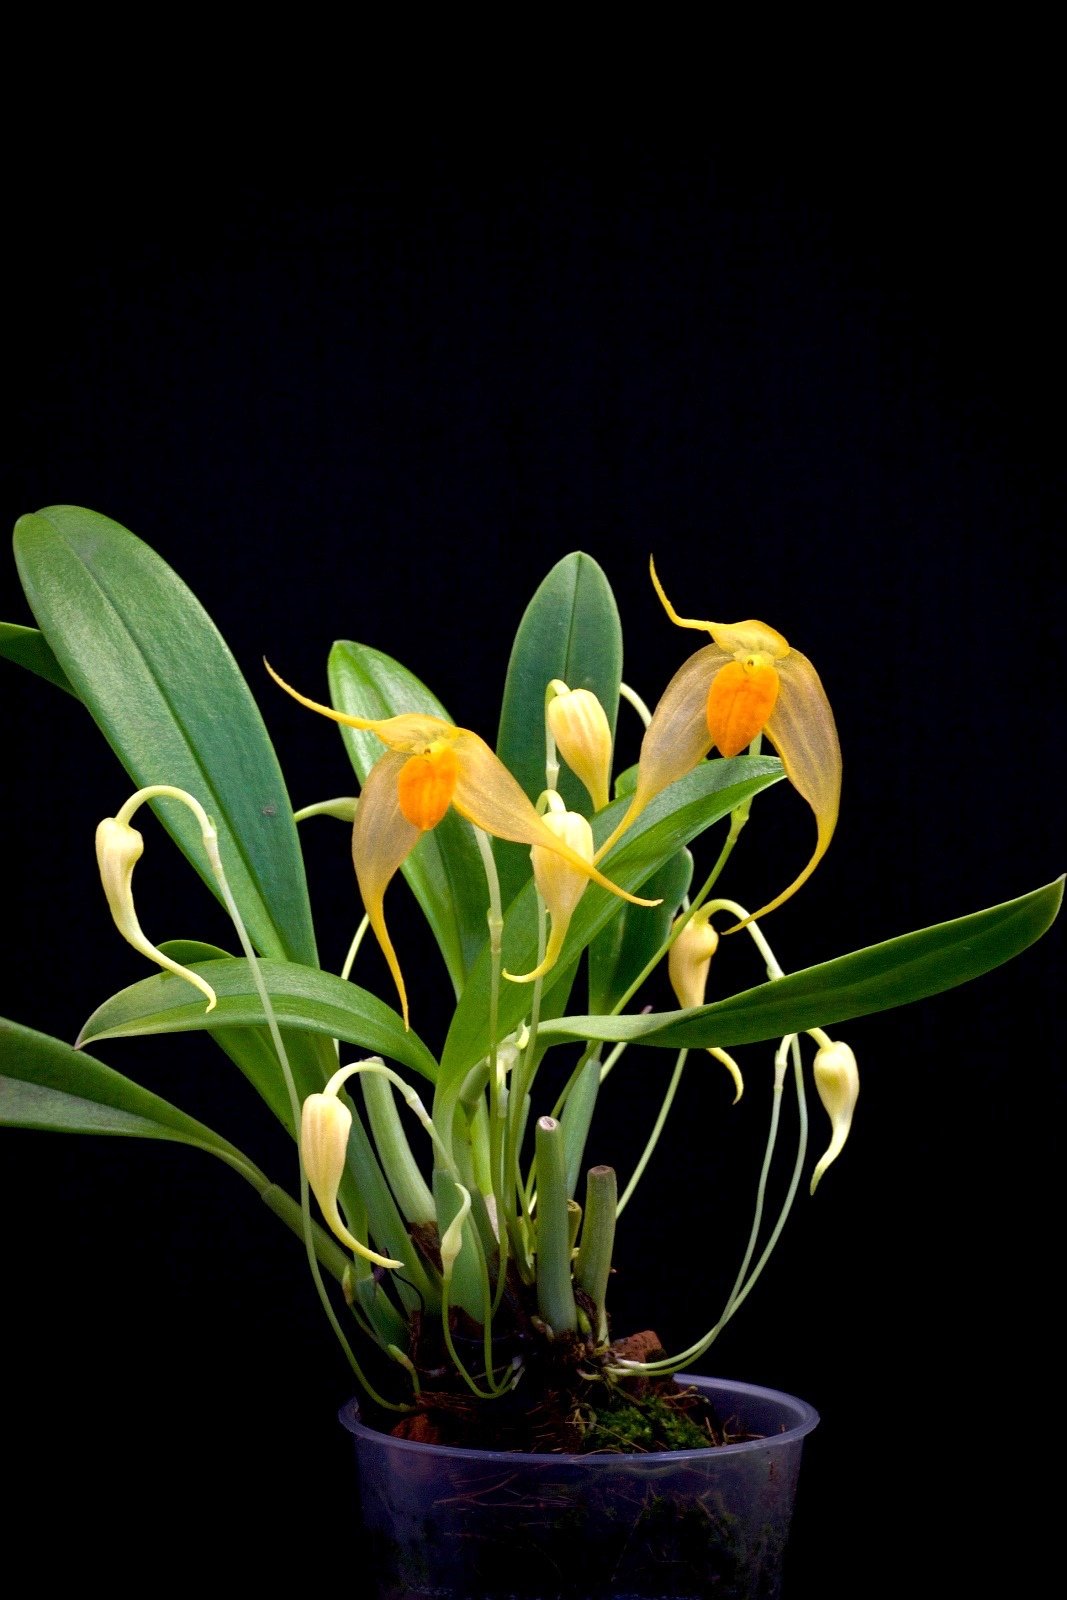 Bulbophyllum ankylochele